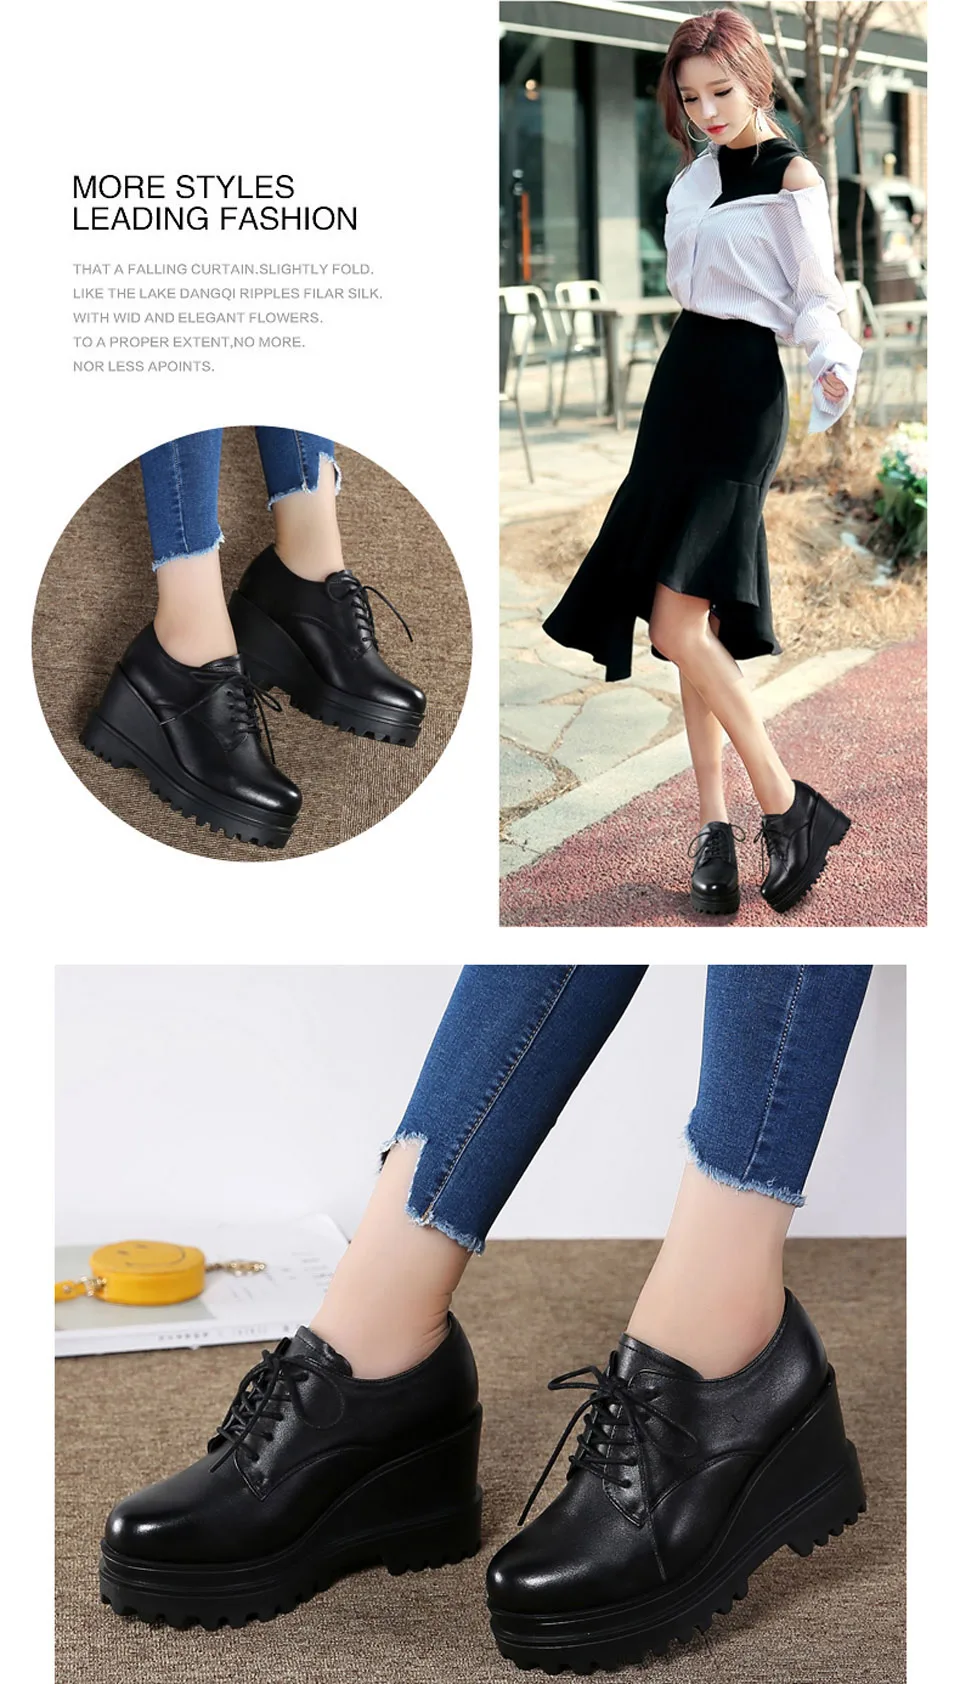 EOFK/Модная женская обувь на танкетке, женская обувь на высоком каблуке, повседневная женская обувь, женские туфли-лодочки, черные, туфли на